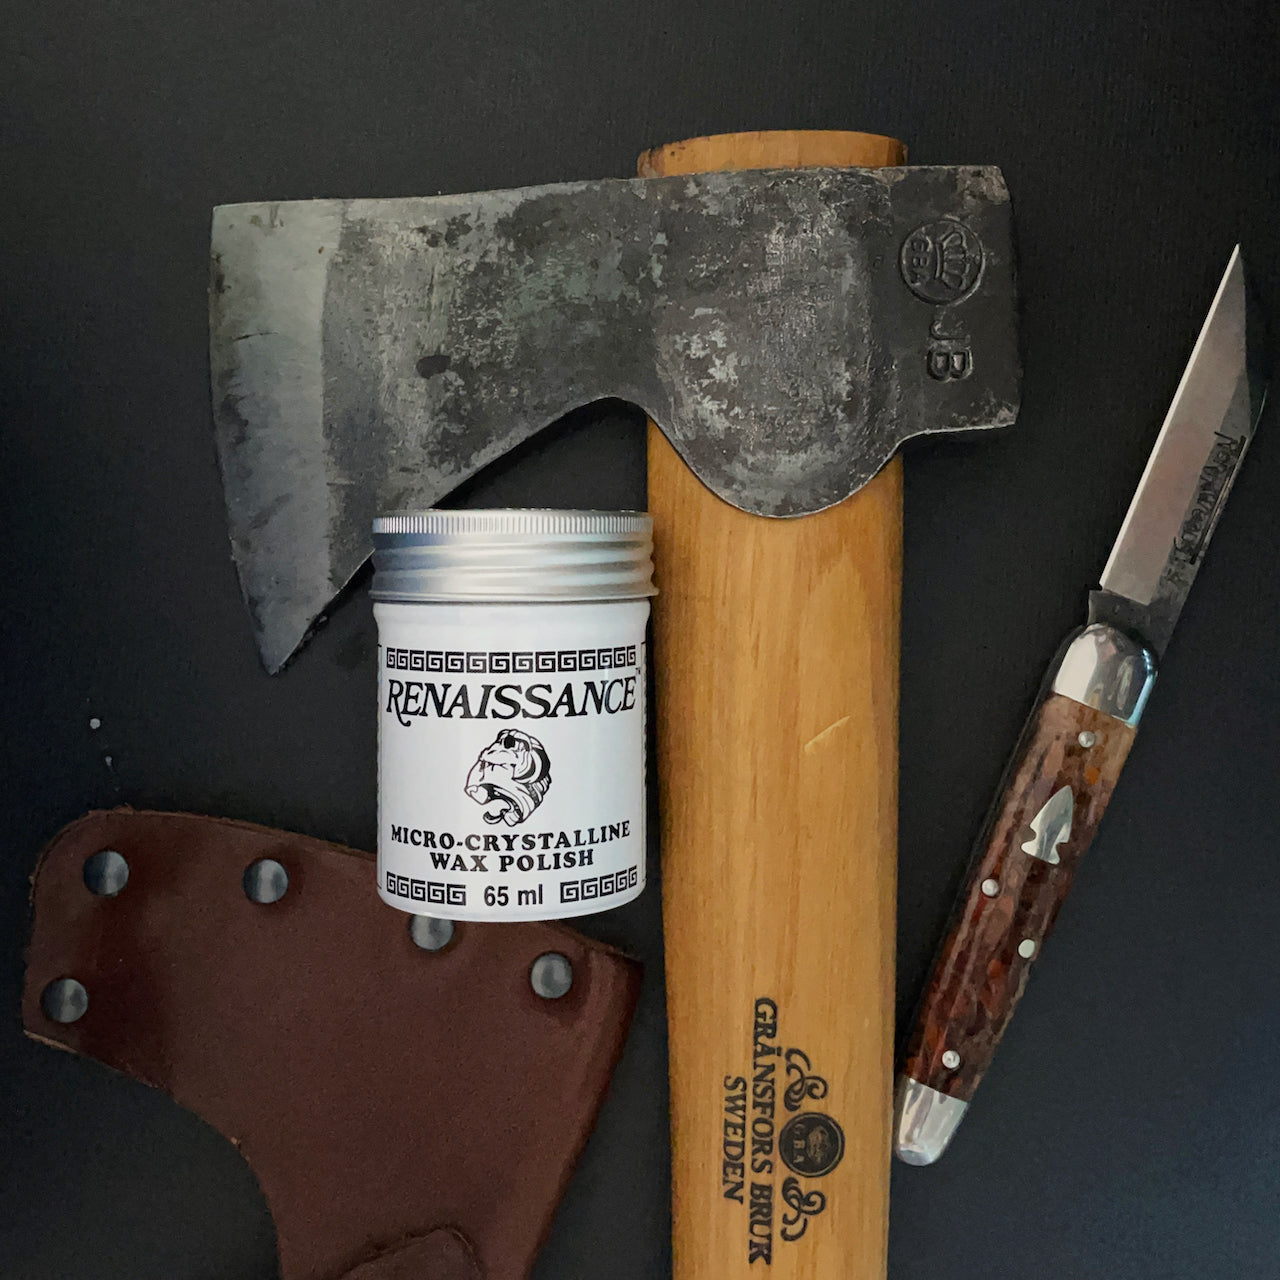 Renaissance Wax PCRW2 200 ml - Knives for Sale